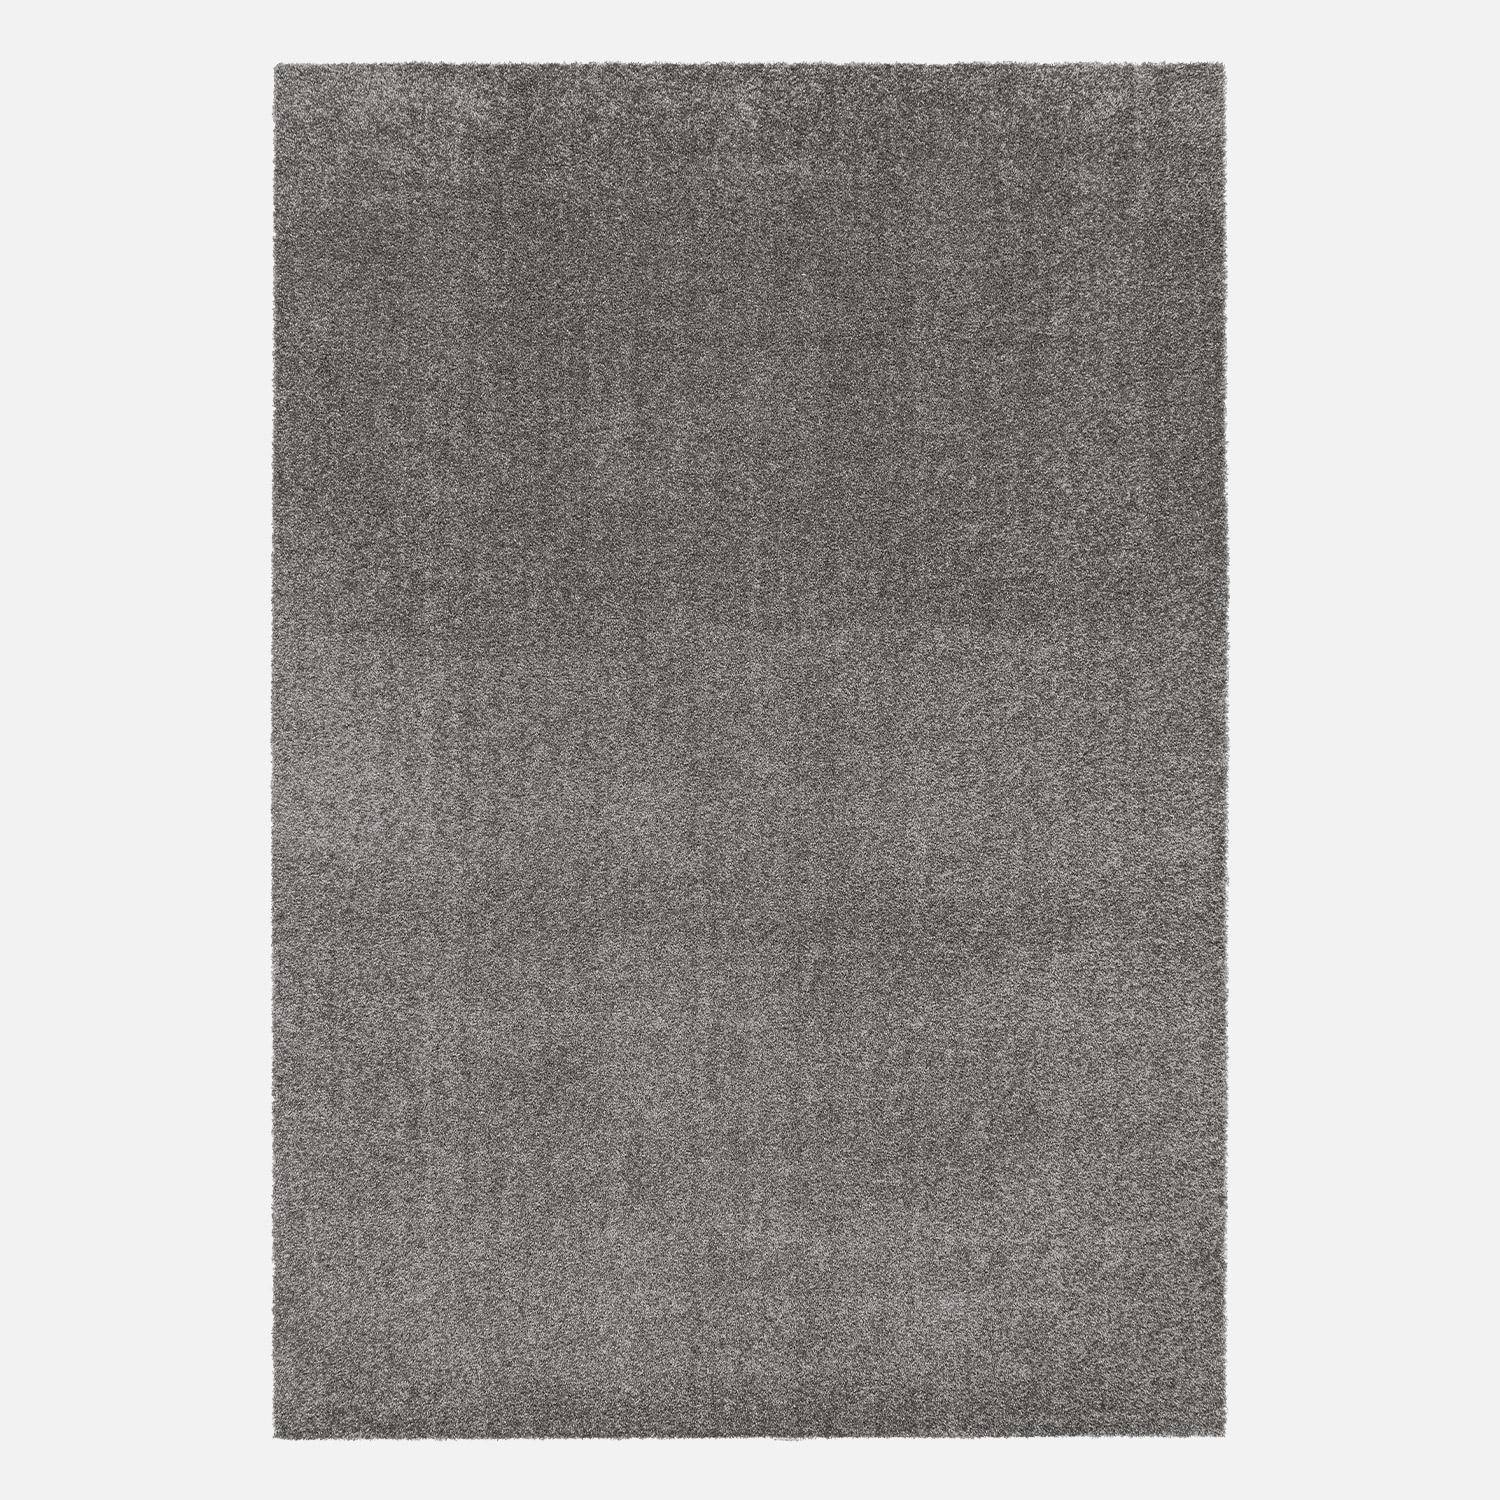 Tappeto per interni in velluto riccio grigio antracite, 80x150cm, a pelo corto con effetto pelo ad anello,sweeek,Photo4